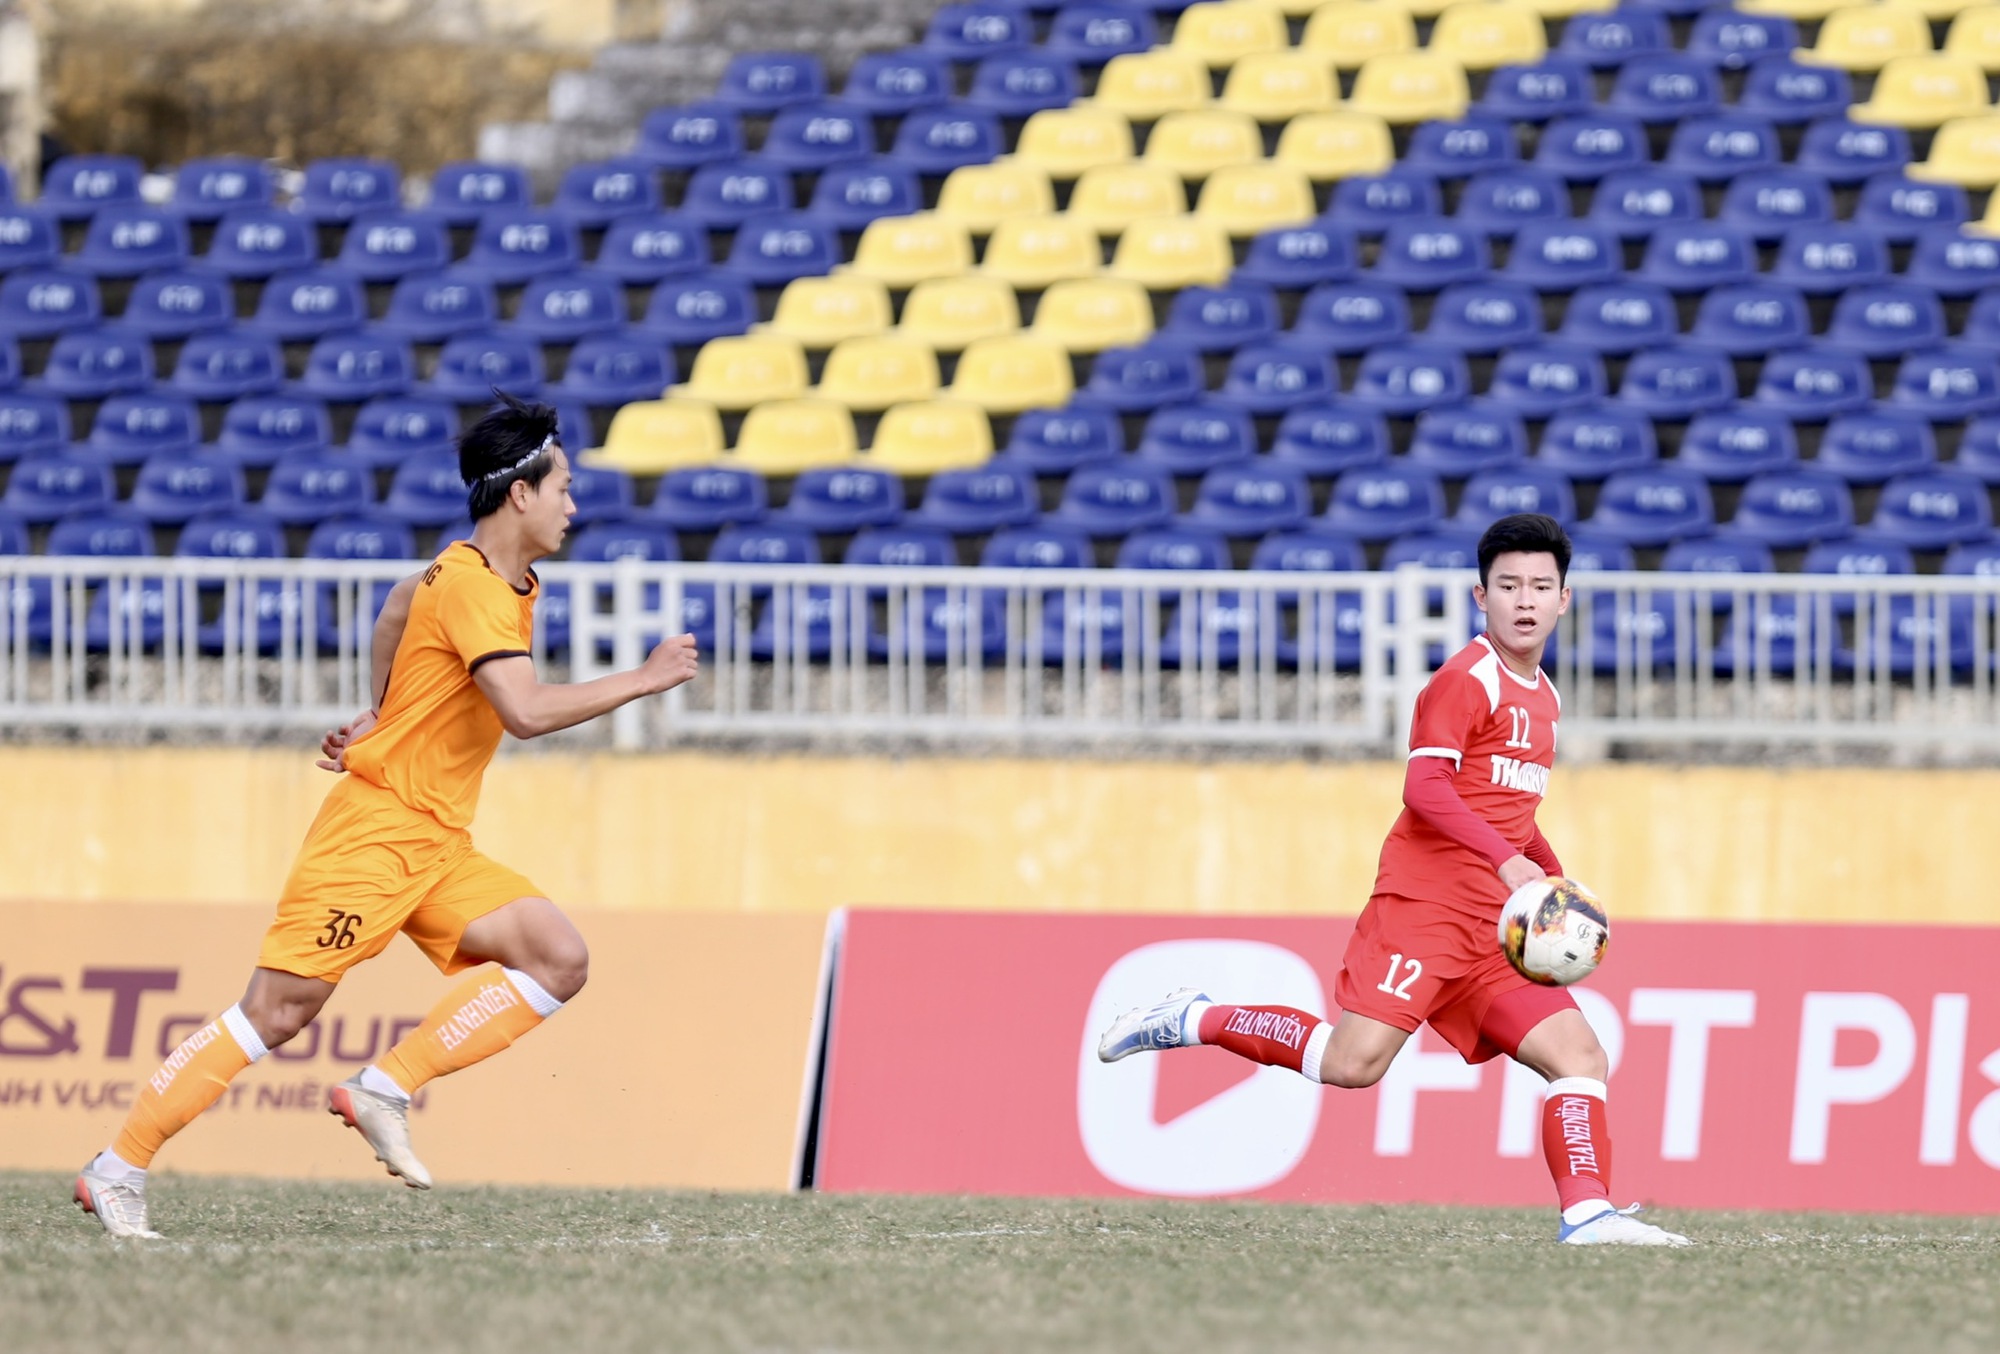 Phan Tuấn Tài toả sáng đánh bại Đà Nẵng, giúp U21 Viettel vào bán kết U21 Quốc gia - Ảnh 1.